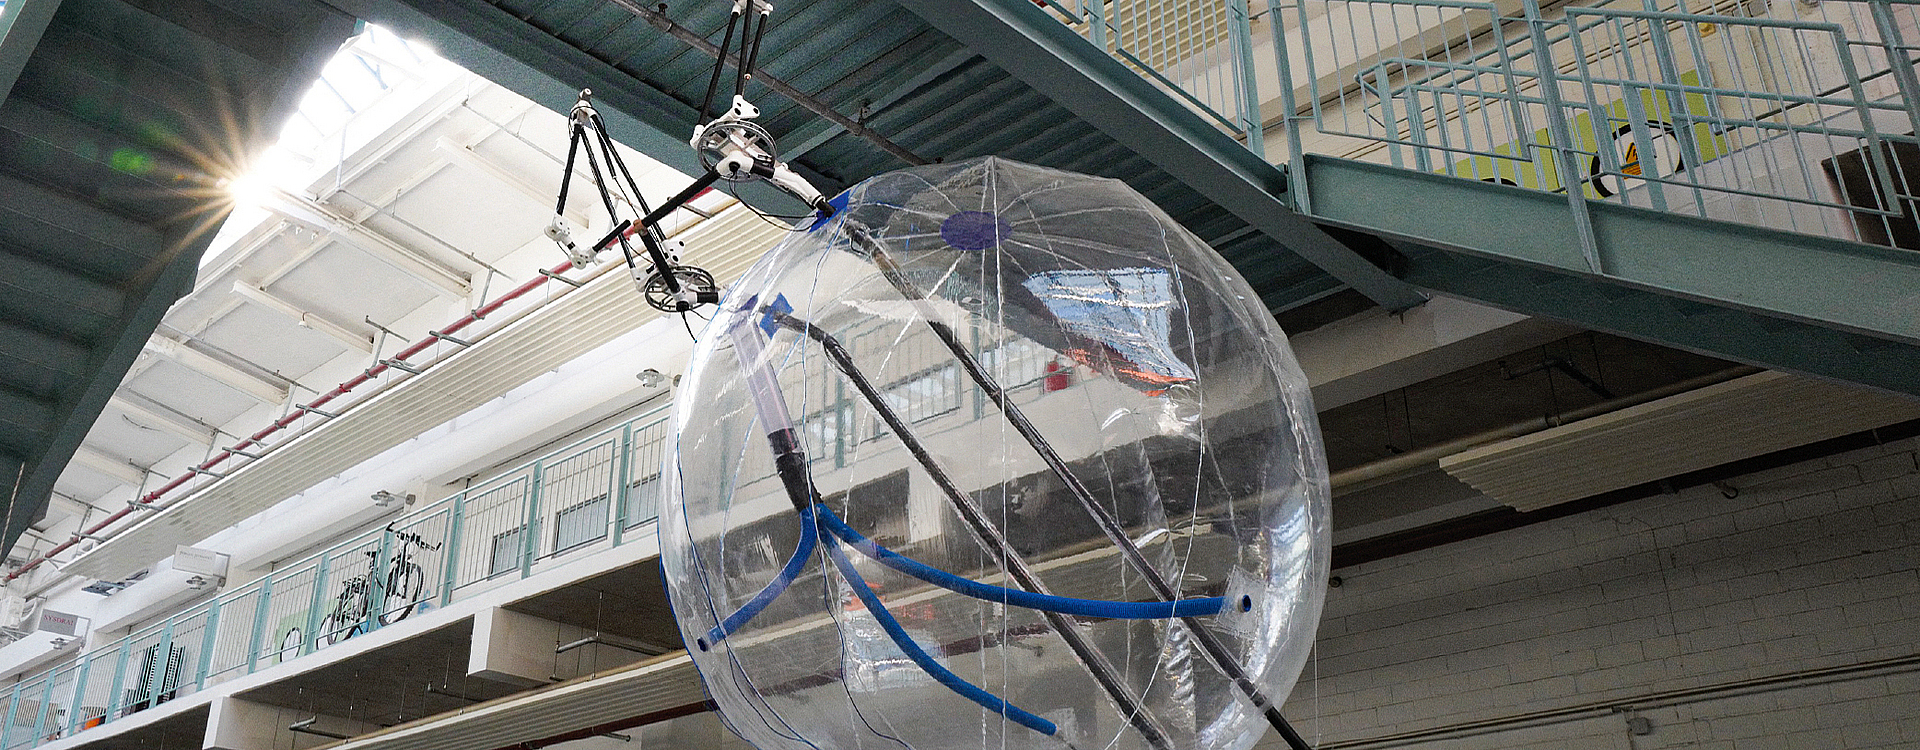 Ballon-Kopter, der in einer Halle unter einem Verbindungssteg schwebt.